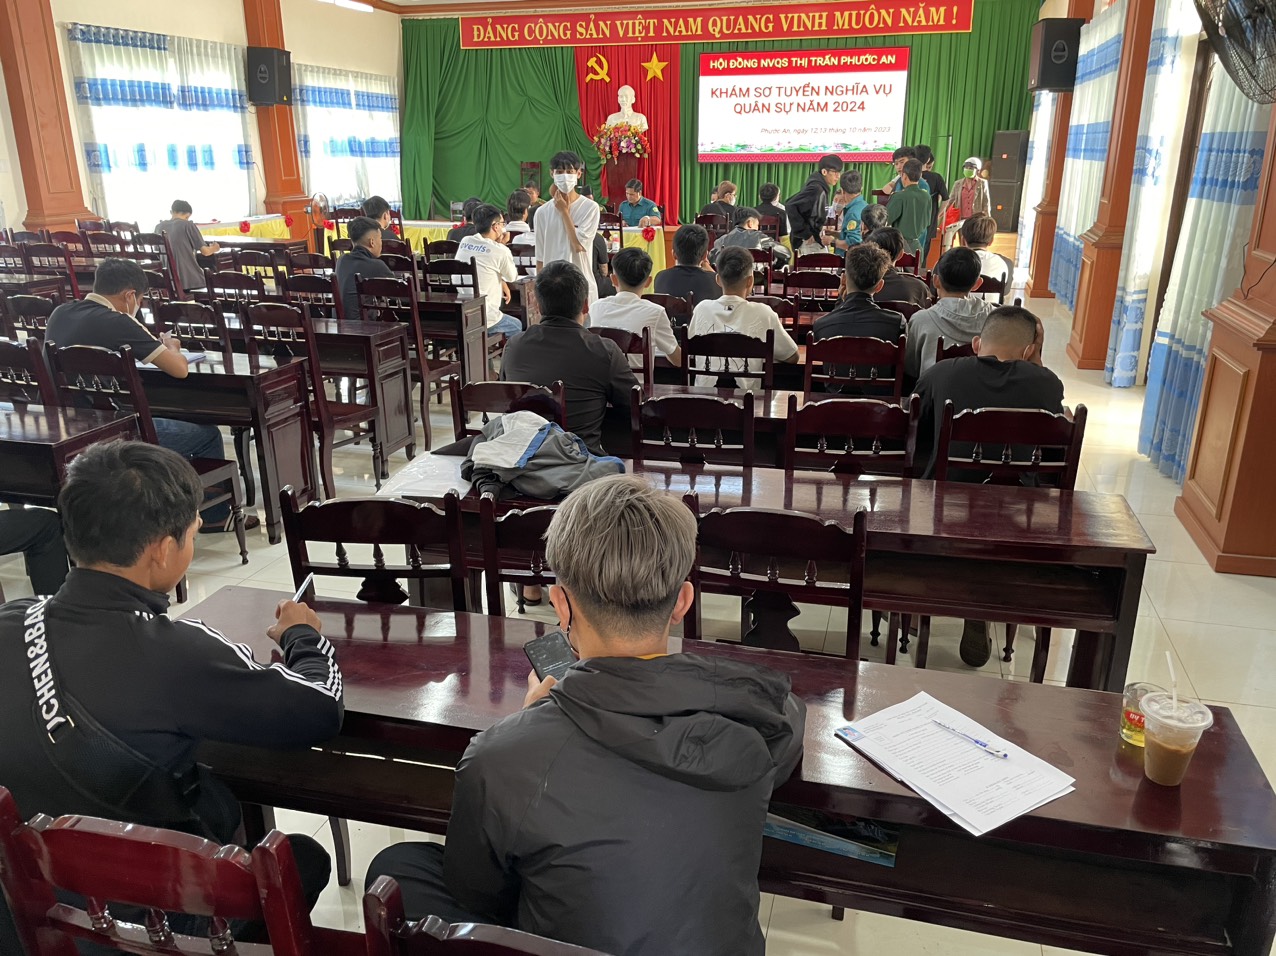 Hội đồng nghĩa vụ quân sự  thị trấn Phước An tổ chức khám sơ tuyển nghĩa vụ Quân sự năm 2024